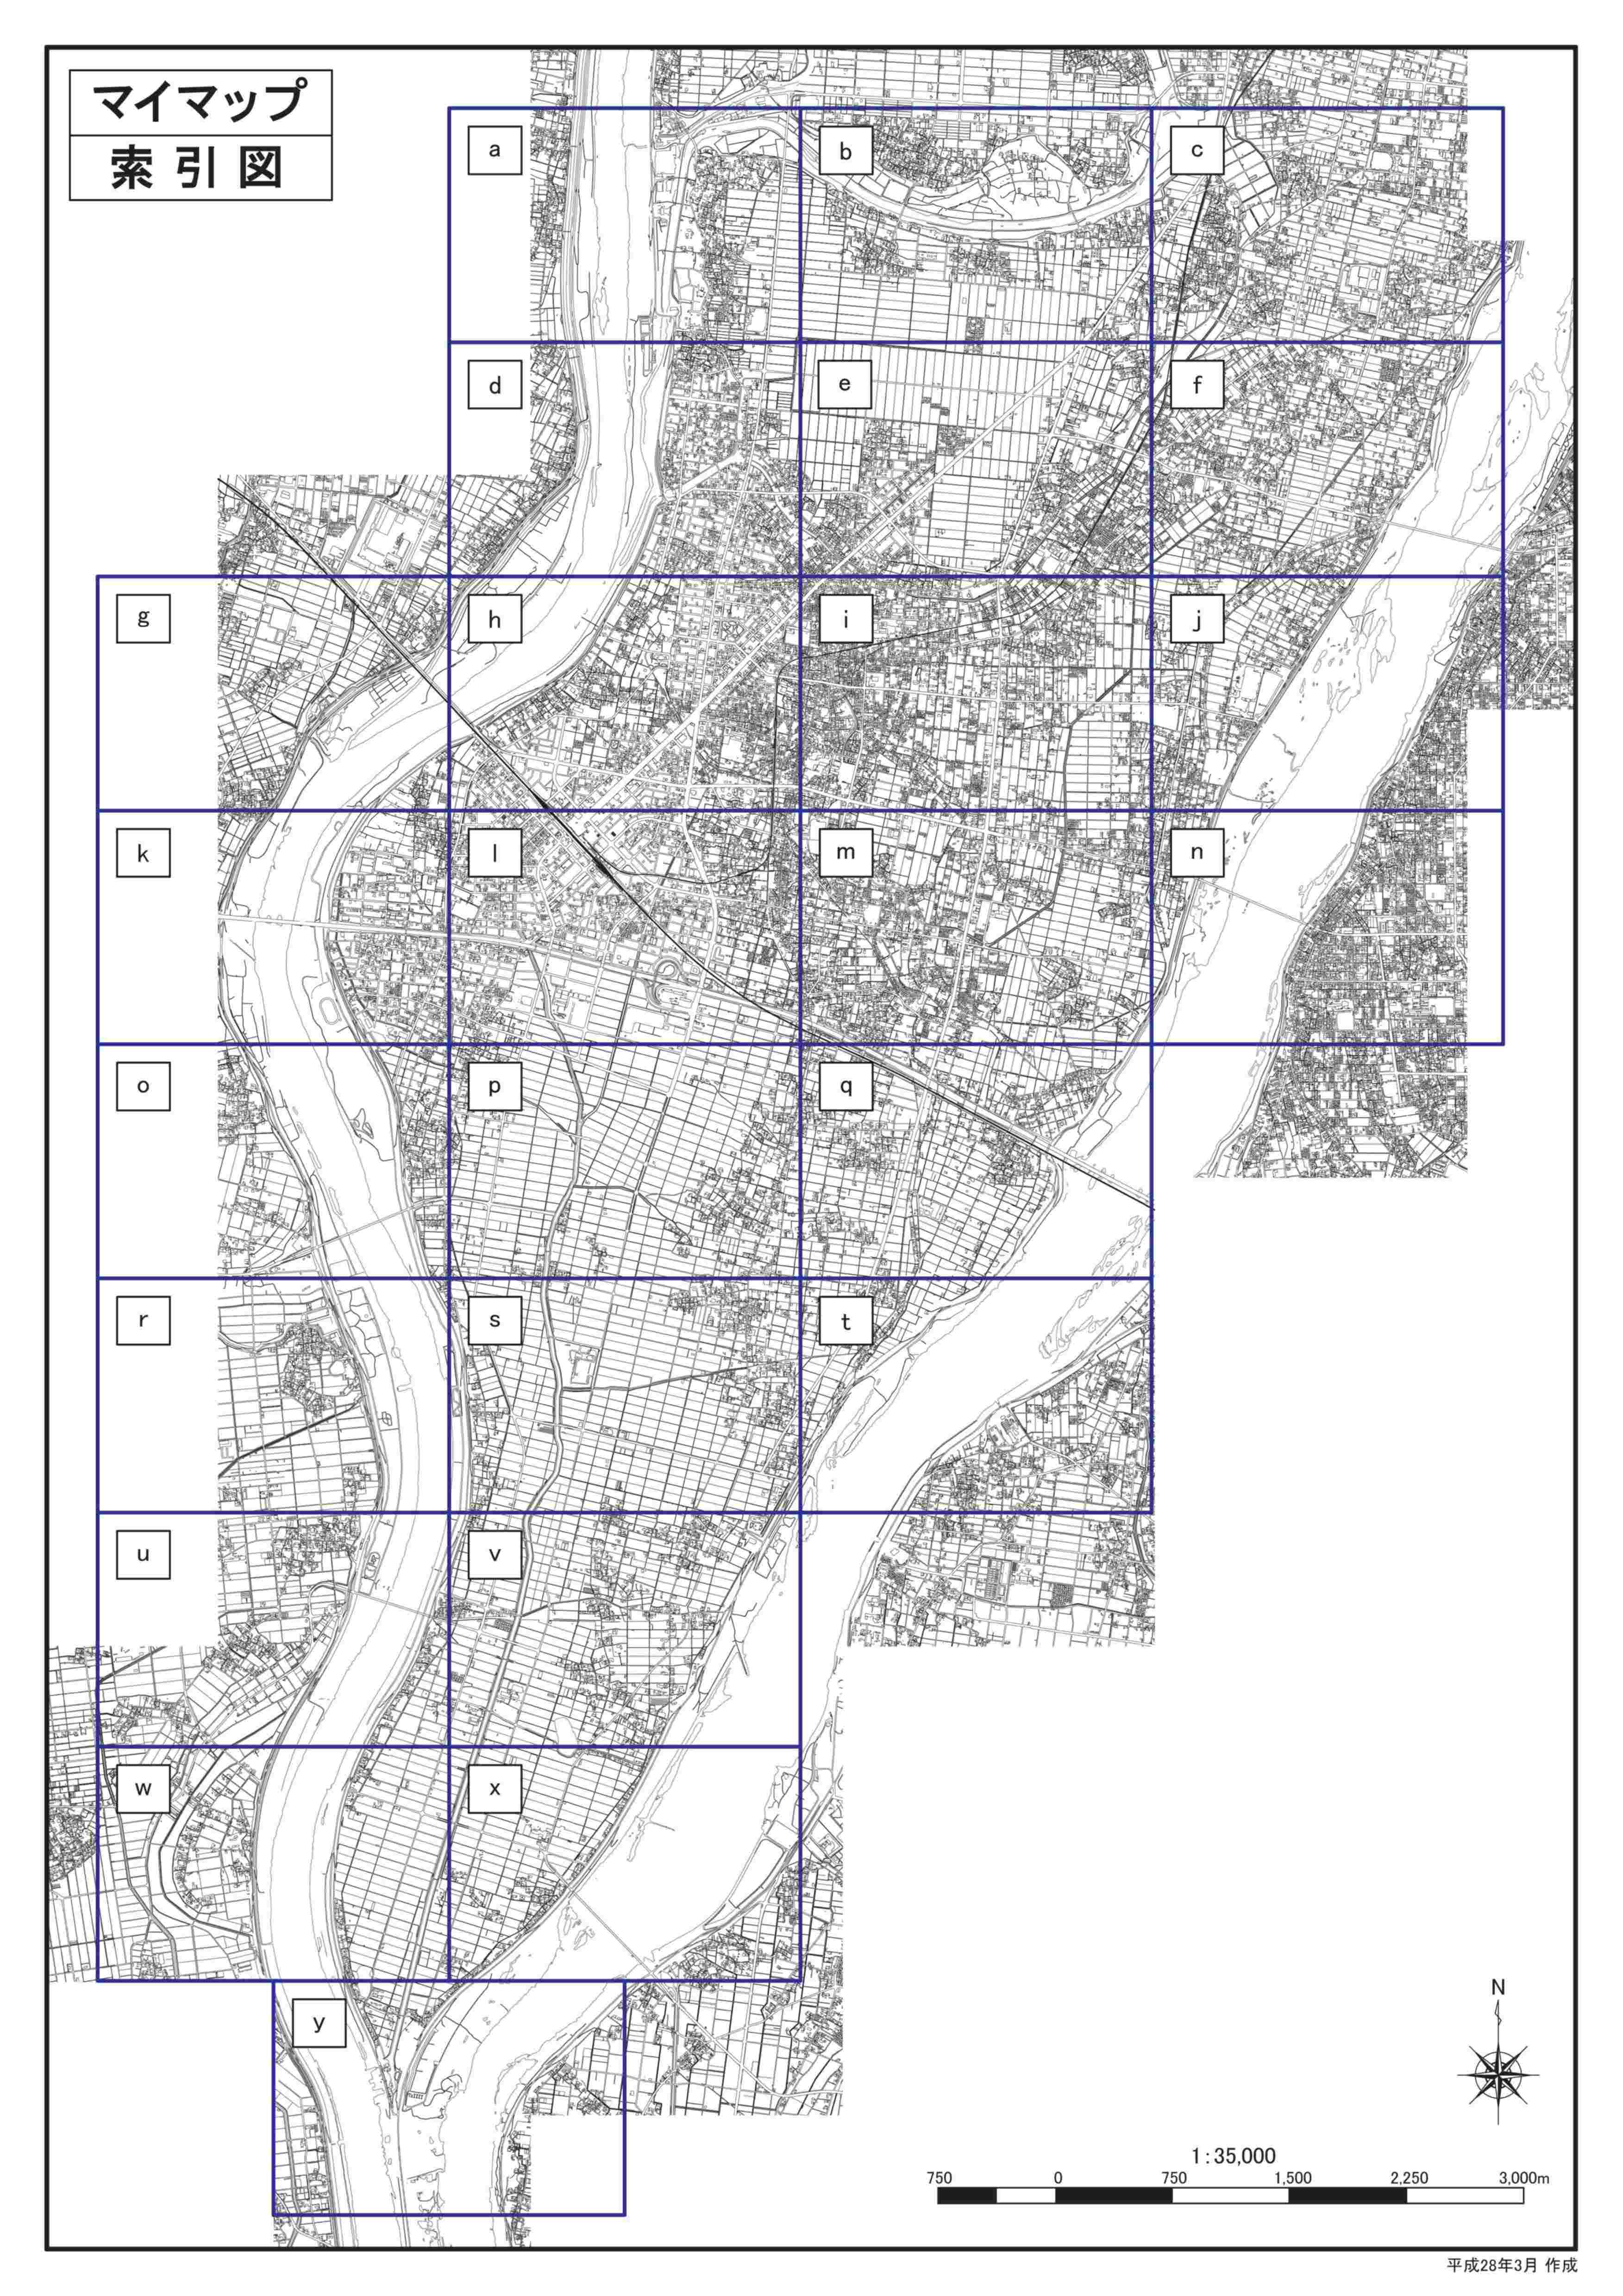 木曽川洪水ハザードマップ計画規模版（詳細図）の画像